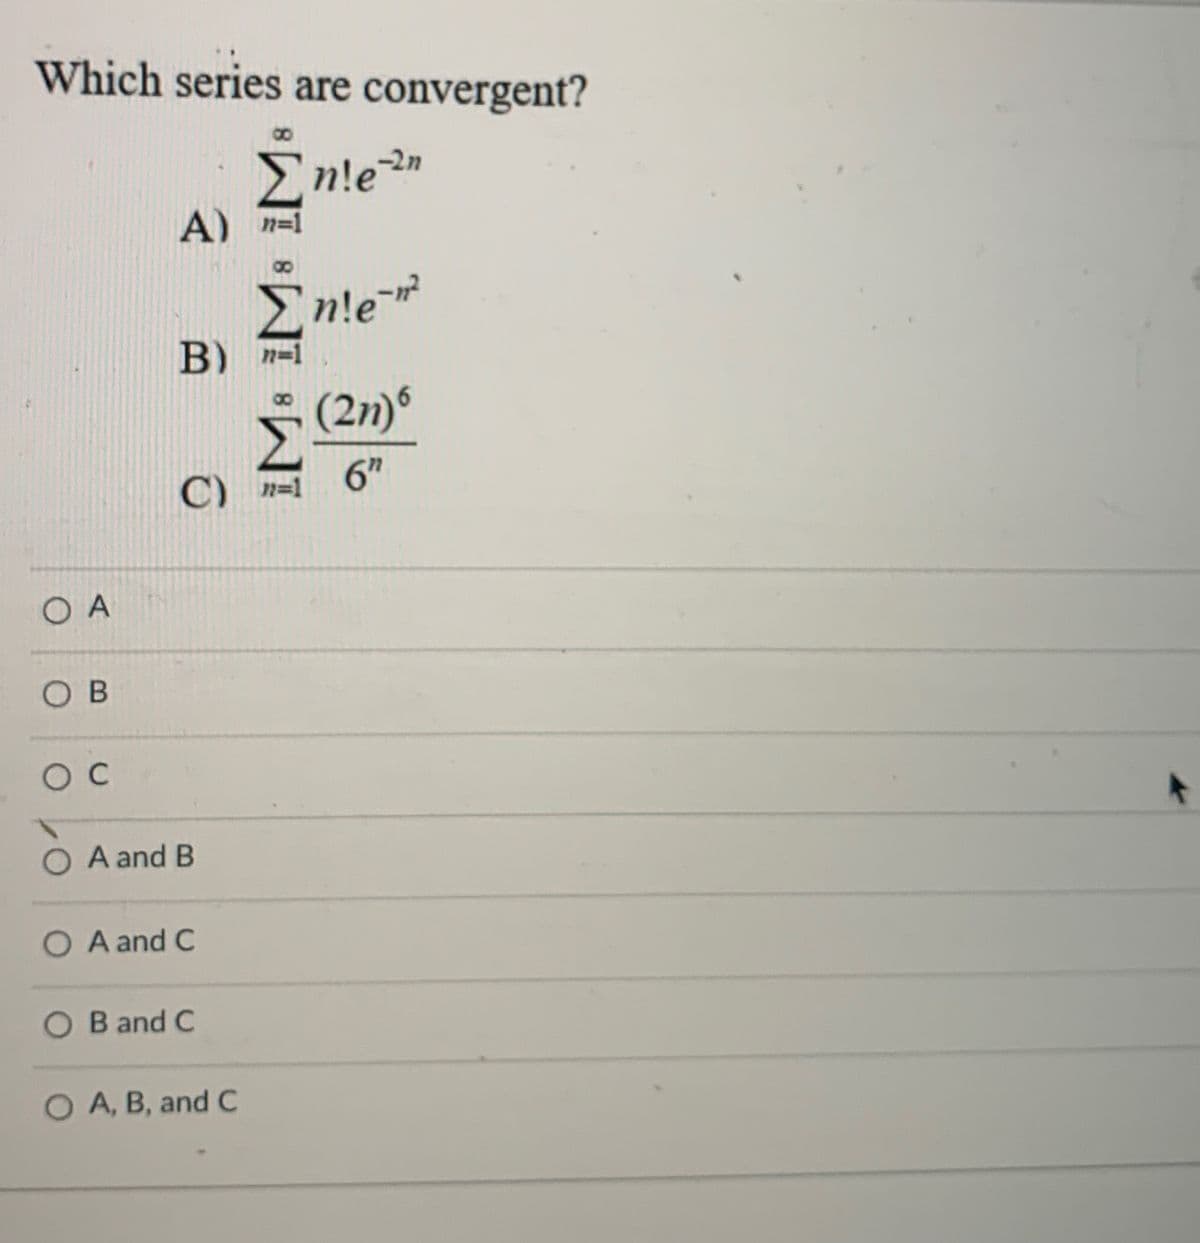 Which series are convergent?
8.
Enlen
A) n=1
En!e
B) n=1
(2n)®
C) n=1
6"
O A
O B
C
A and B
O A and C
B and C
O A, B, and C
